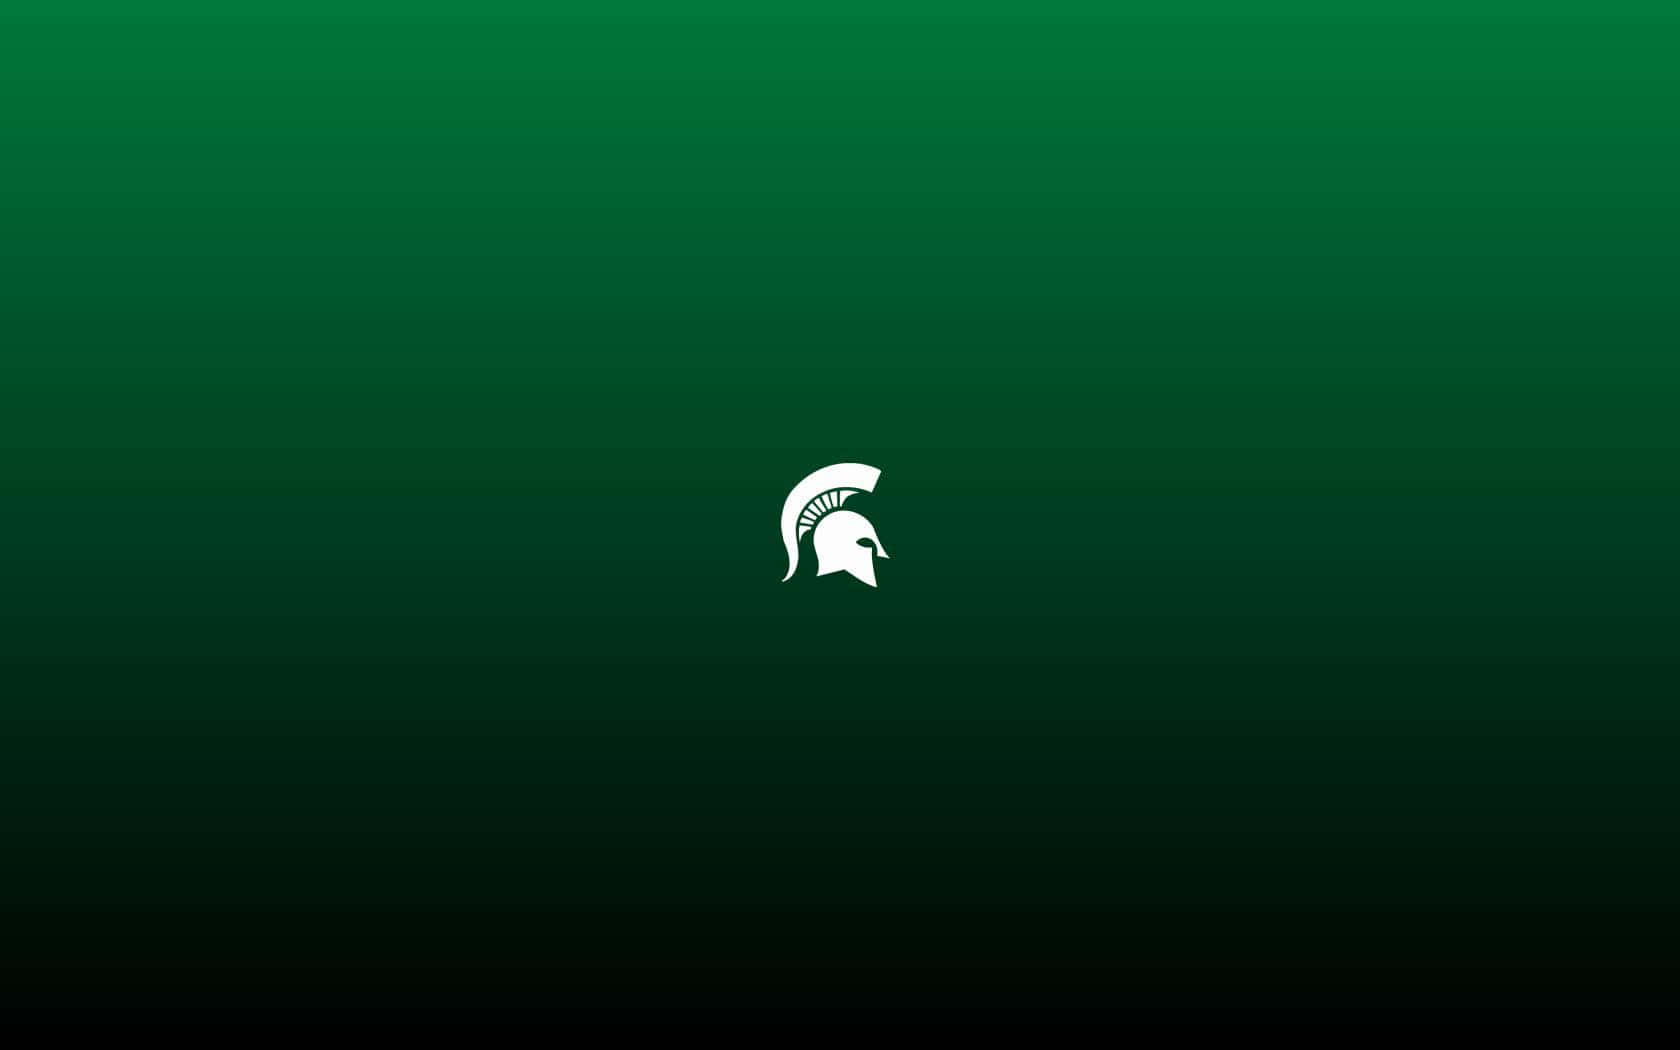 Pequeñologotipo De Los Michigan State Spartans Sobre Un Fondo Verde. Fondo de pantalla